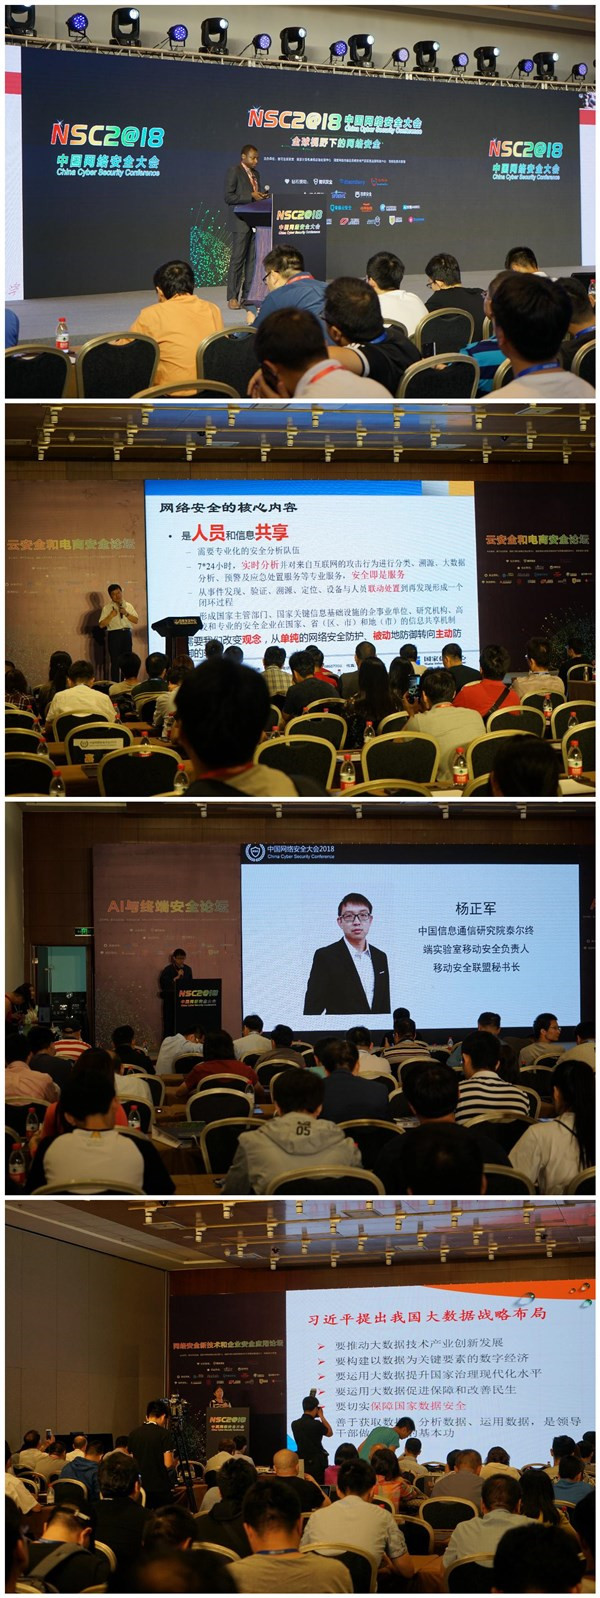 共建网络安全 美创科技再度亮相中国网络安全大会